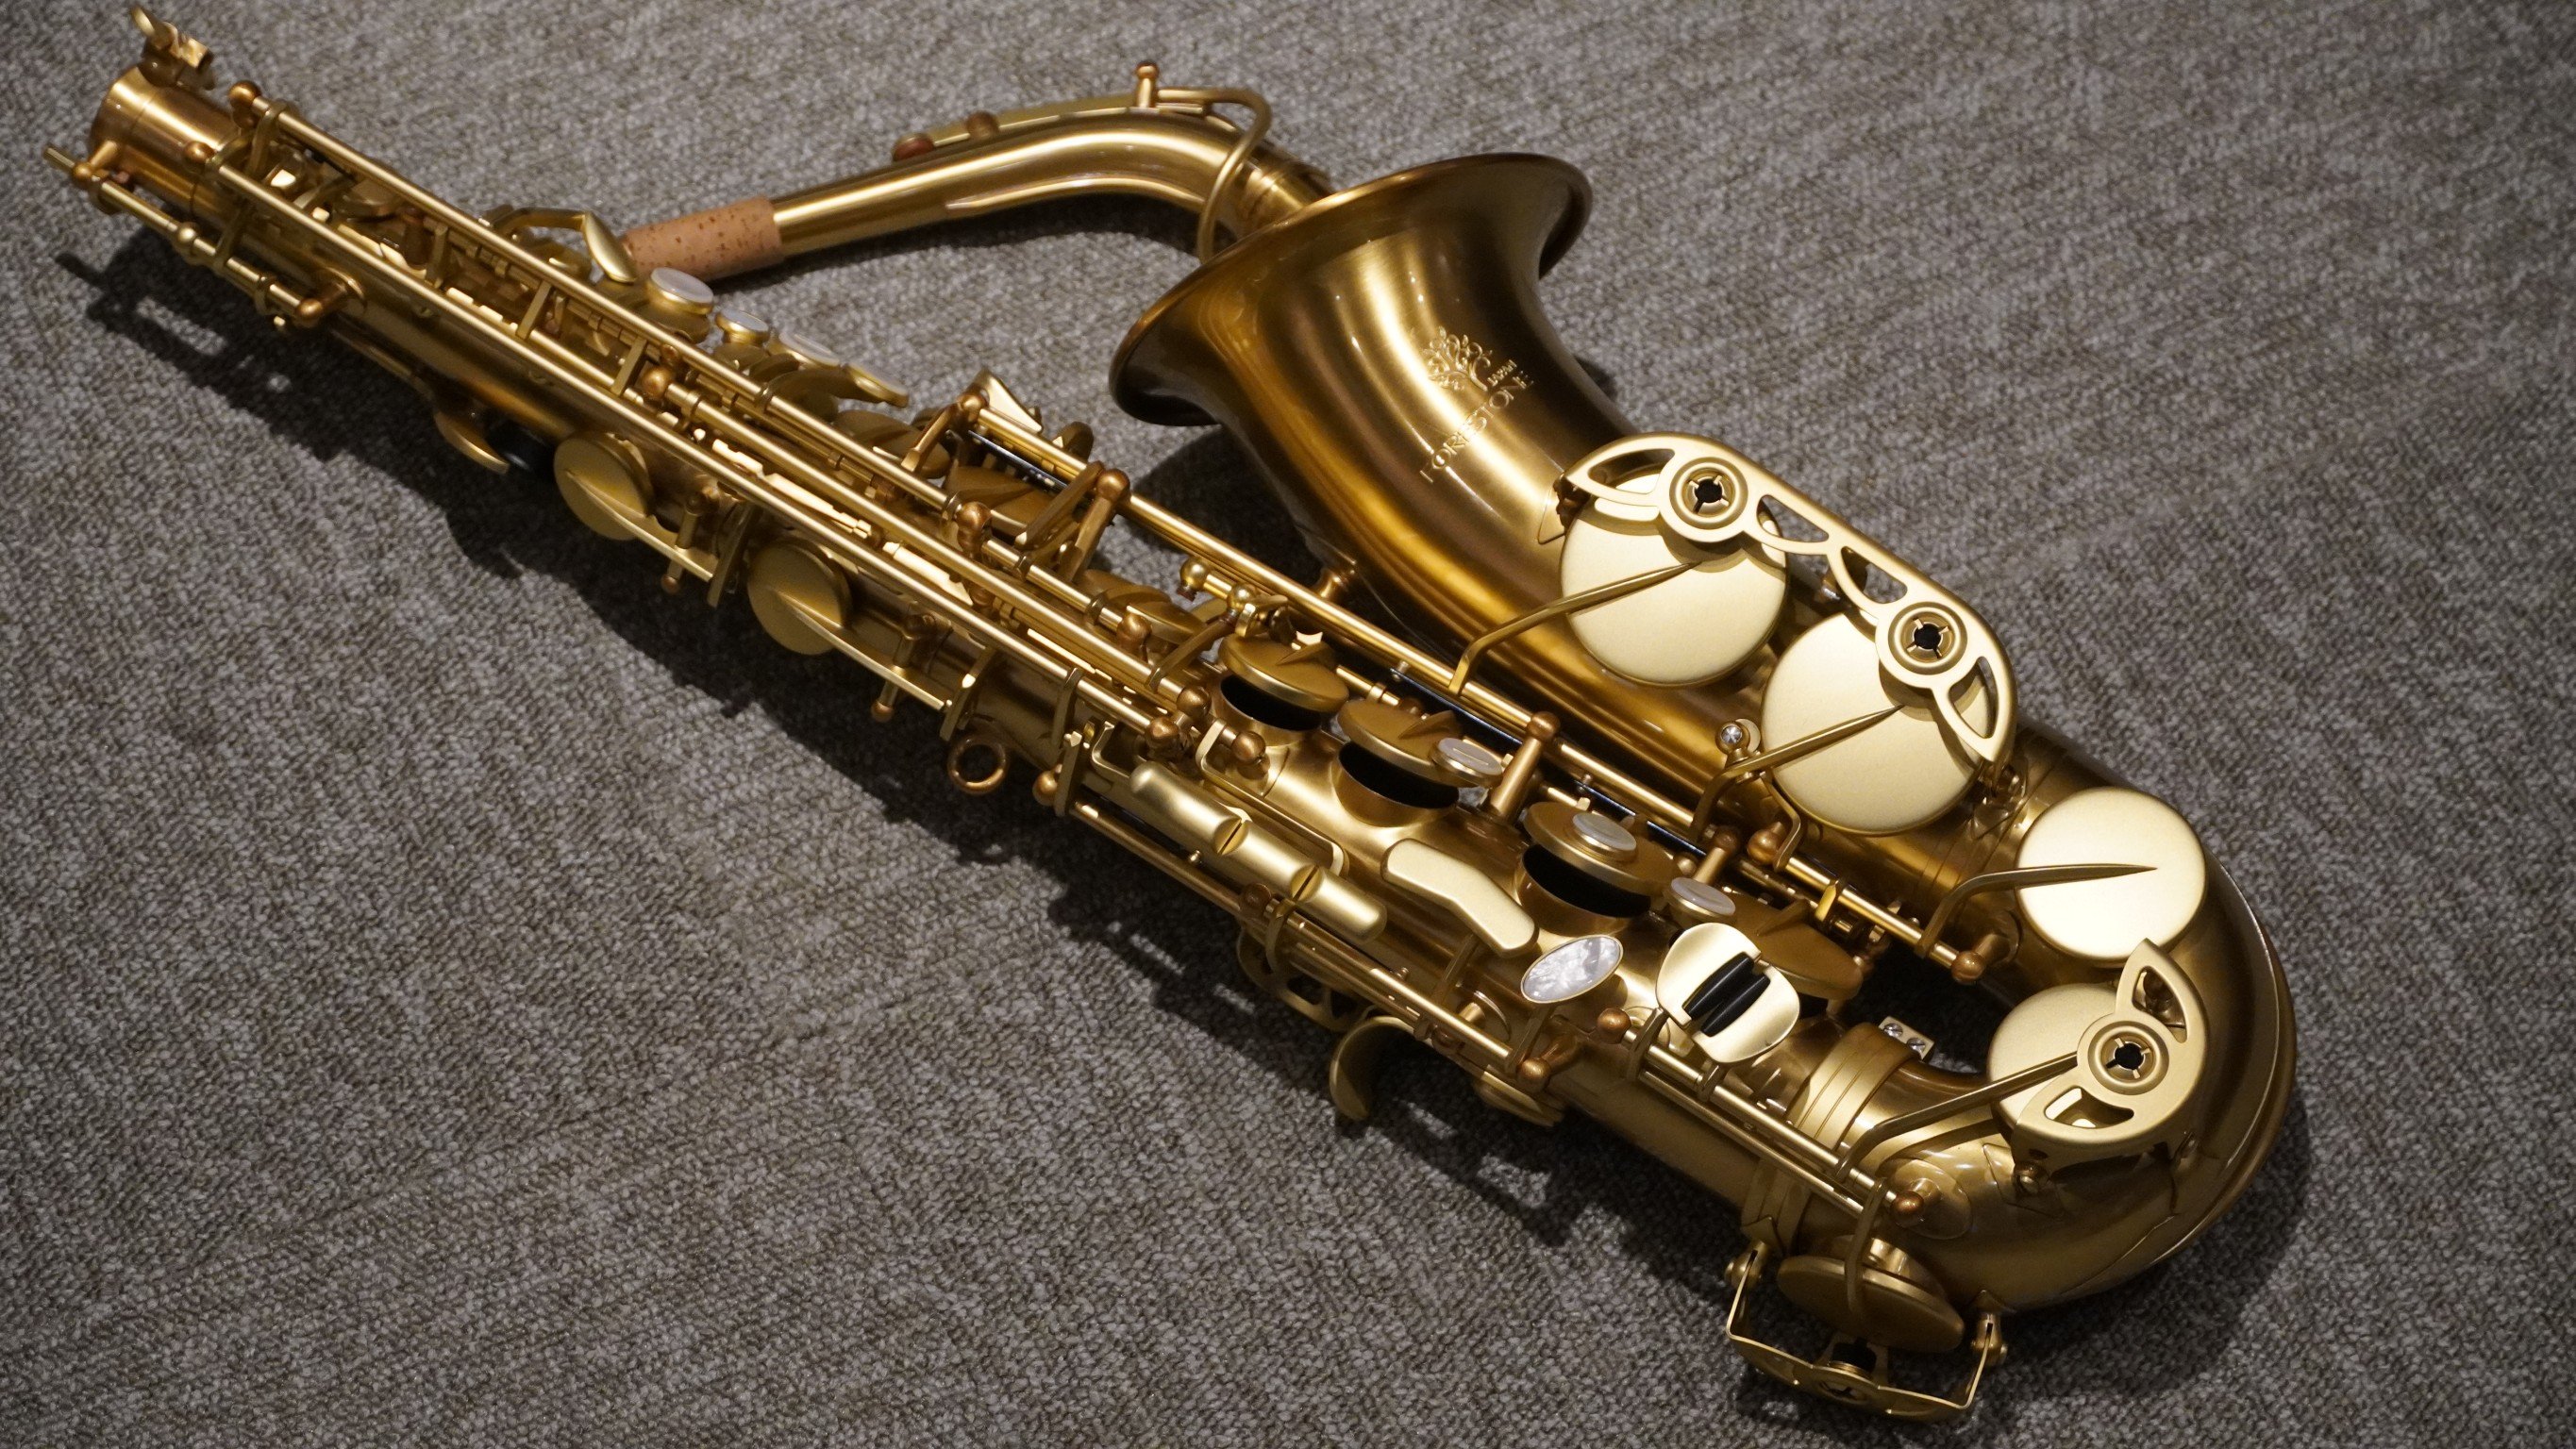 §唐川音樂§【Forestone GX PRO Alto Saxophone HG 髮絲紋金 中音薩克斯風】